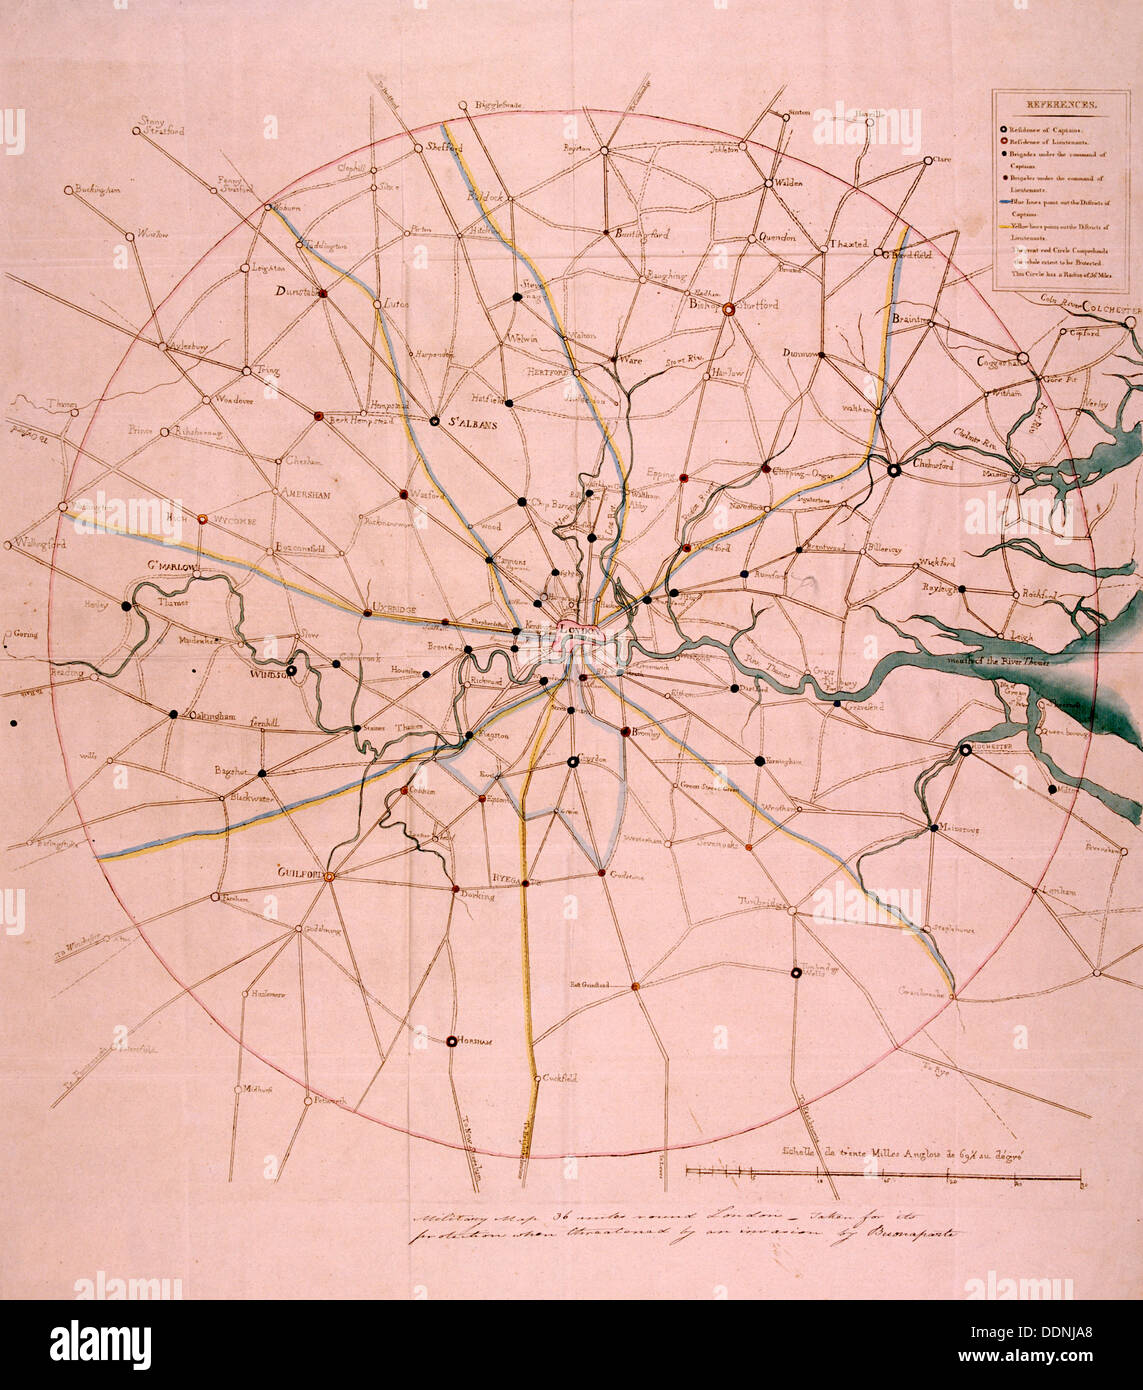 Mapa militar de una zona de 36 millas alrededor de Londres, c1804. Artista: Anon Foto de stock